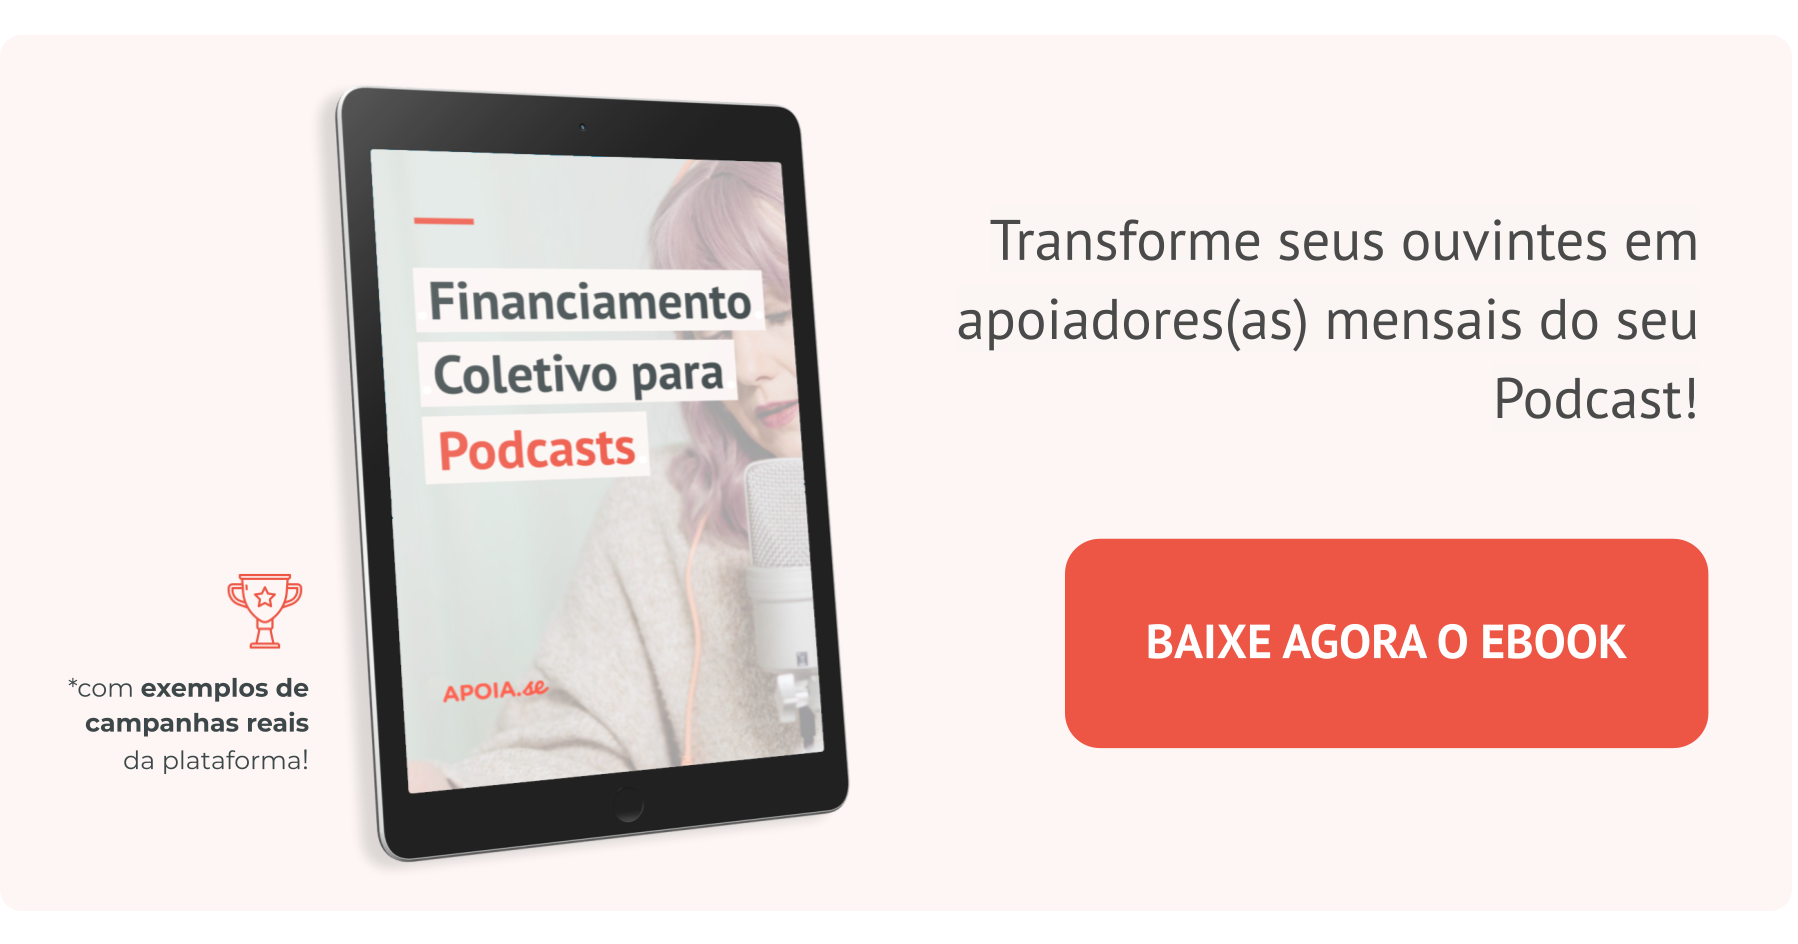 Banner com a imagem de um tablet aberto em uma página do ebook “Financiamento Coletivo para Podcasts”, com um botão laranja escrito "baixe agora o ebook". Ainda tem os dizeres "com exemplos de campanhas reais da plataforma"